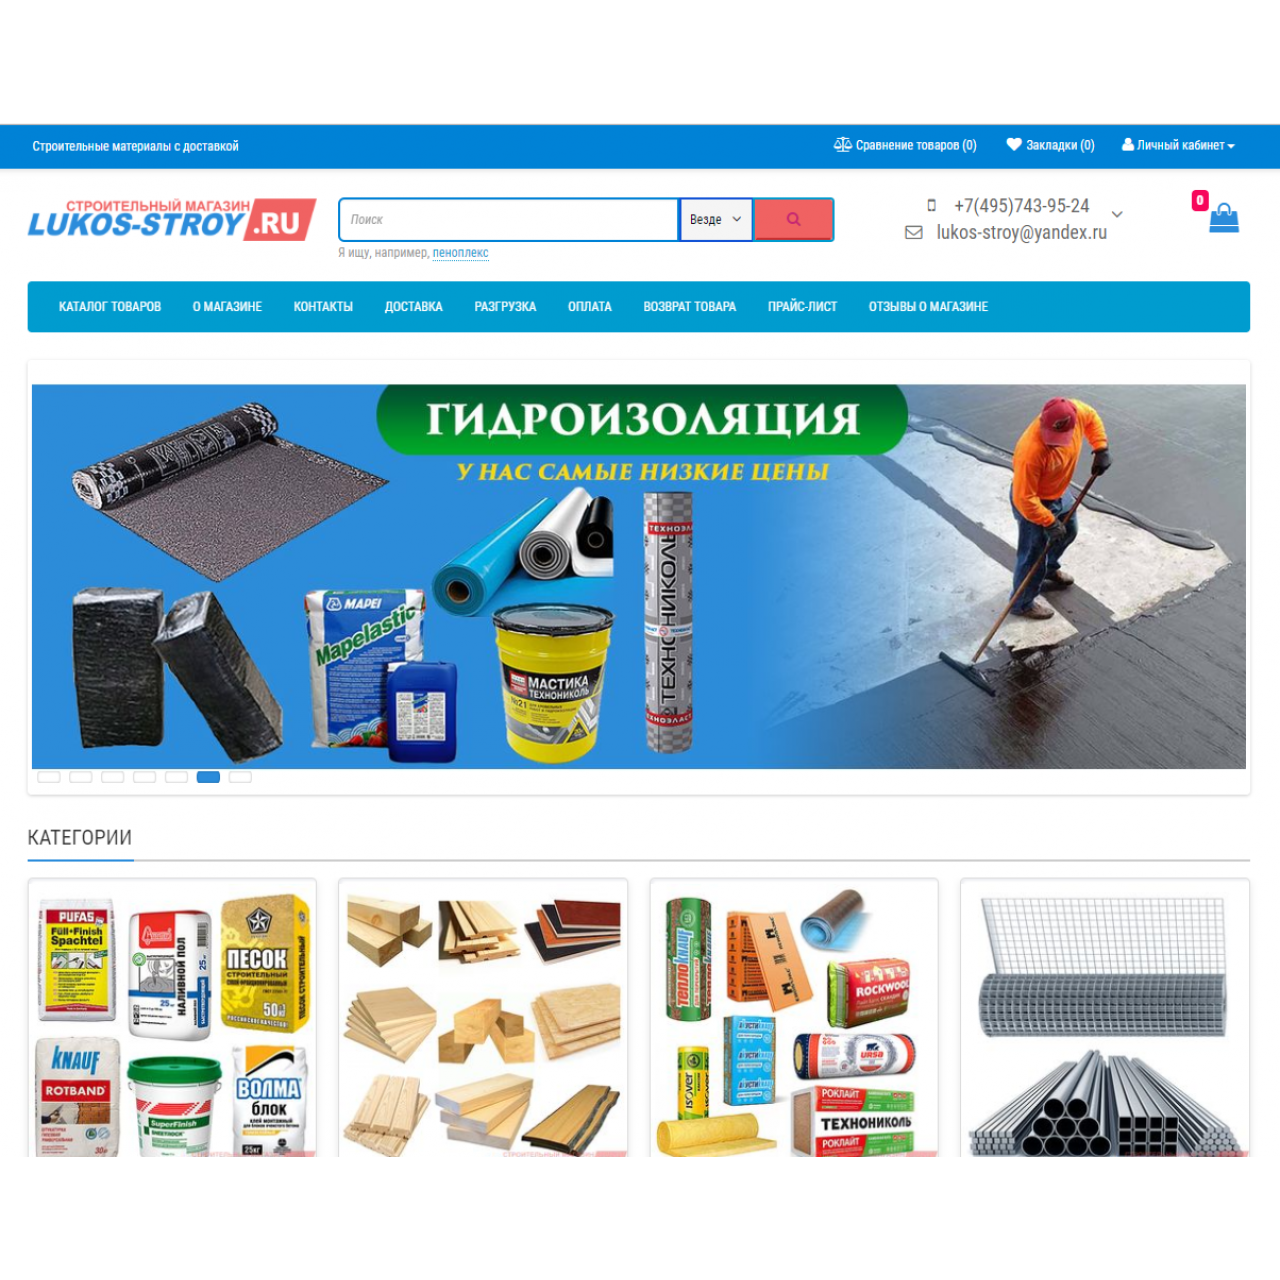 LUKOS-STROY - строительный магазин (настройка) из категории Наши проекты для CMS OpenCart (ОпенКарт)